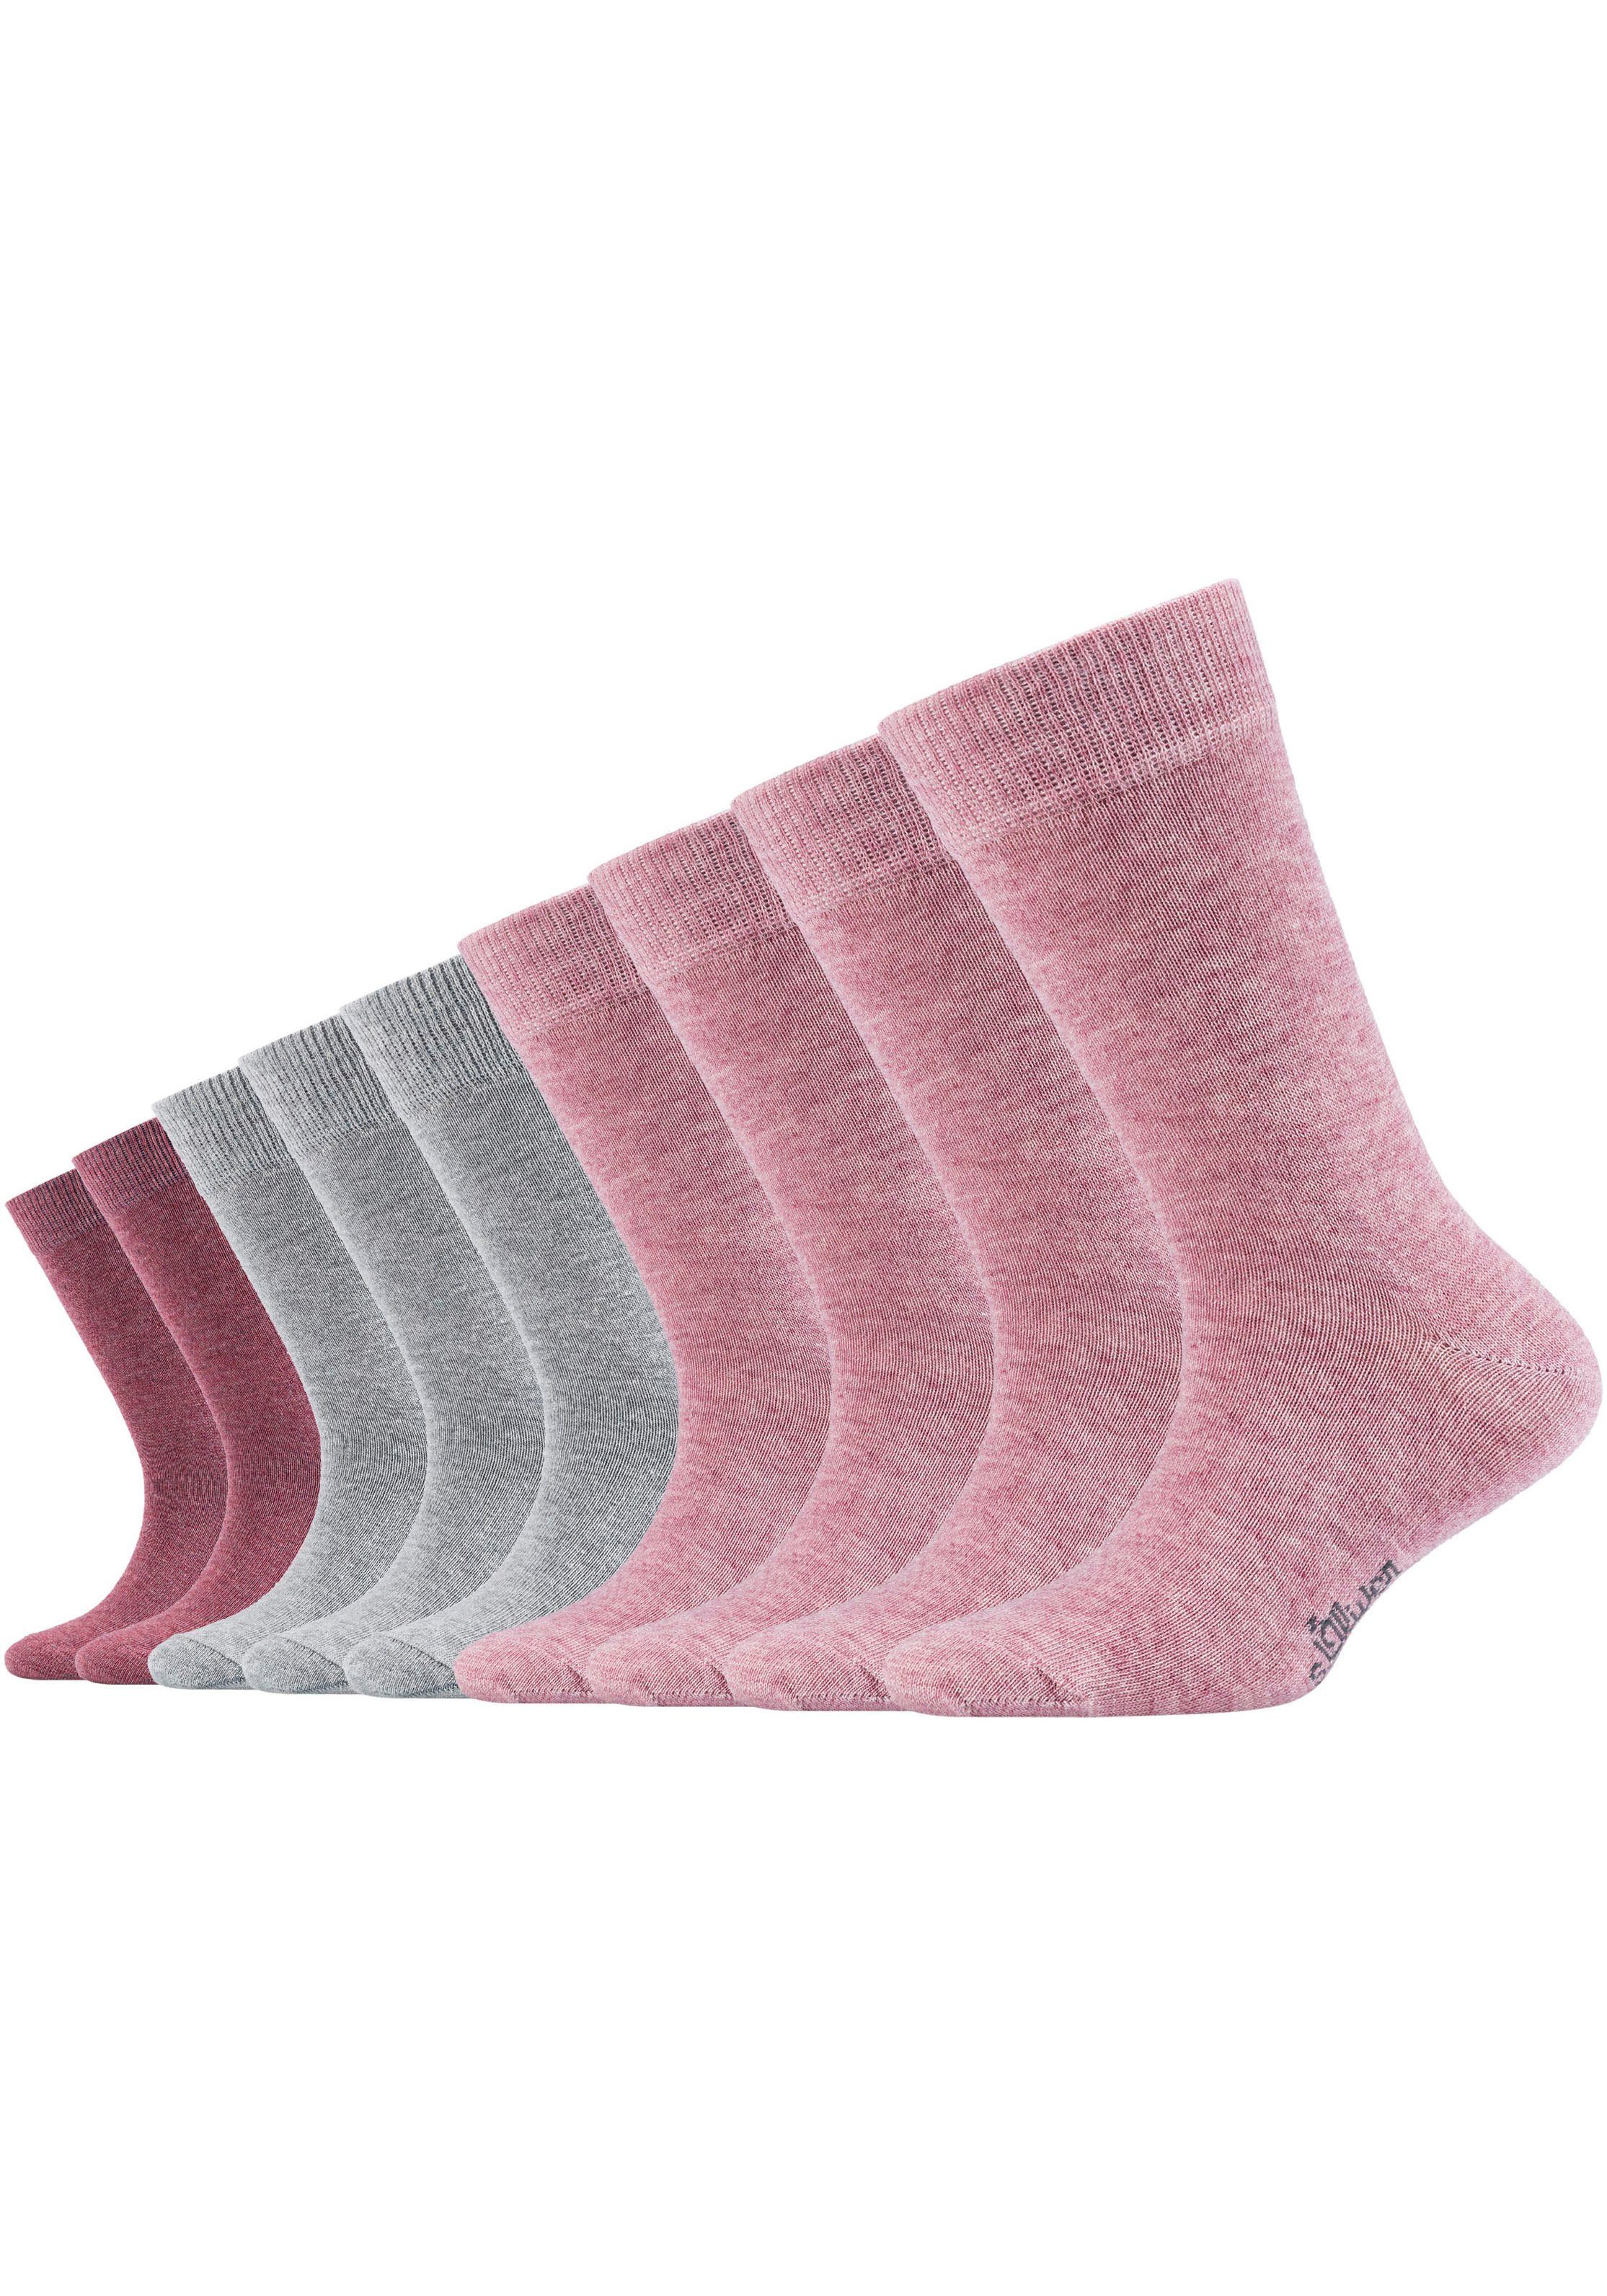 Socken 9-Paar) (Packung, halben Wade Mittelhoch zur bis s.Oliver rosatöne-grau